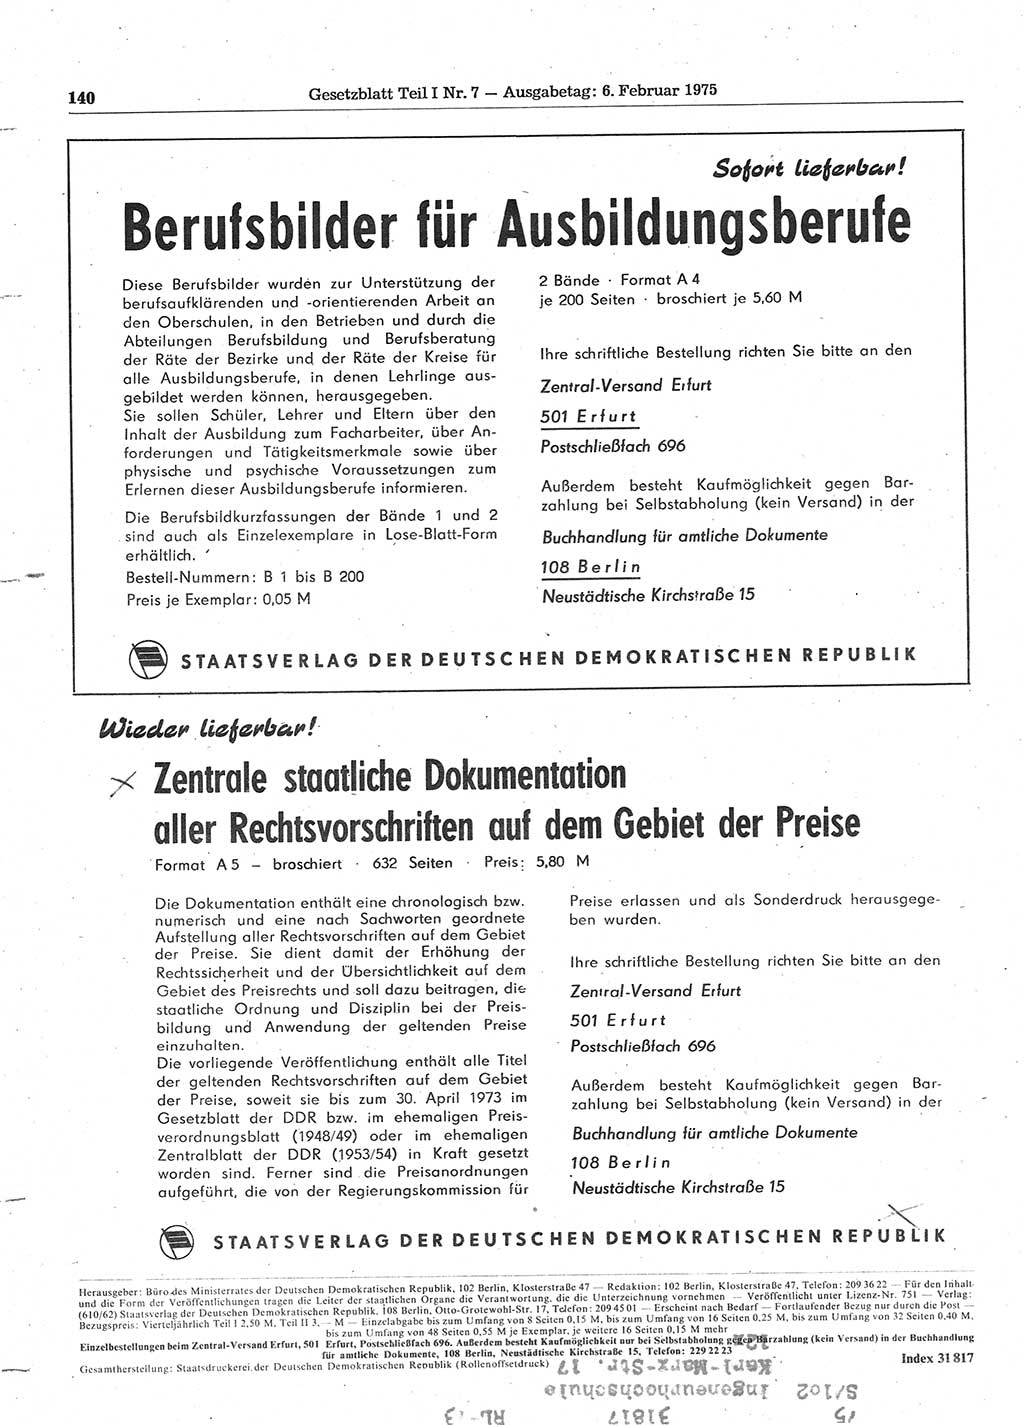 Gesetzblatt (GBl.) der Deutschen Demokratischen Republik (DDR) Teil Ⅰ 1975, Seite 140 (GBl. DDR Ⅰ 1975, S. 140)